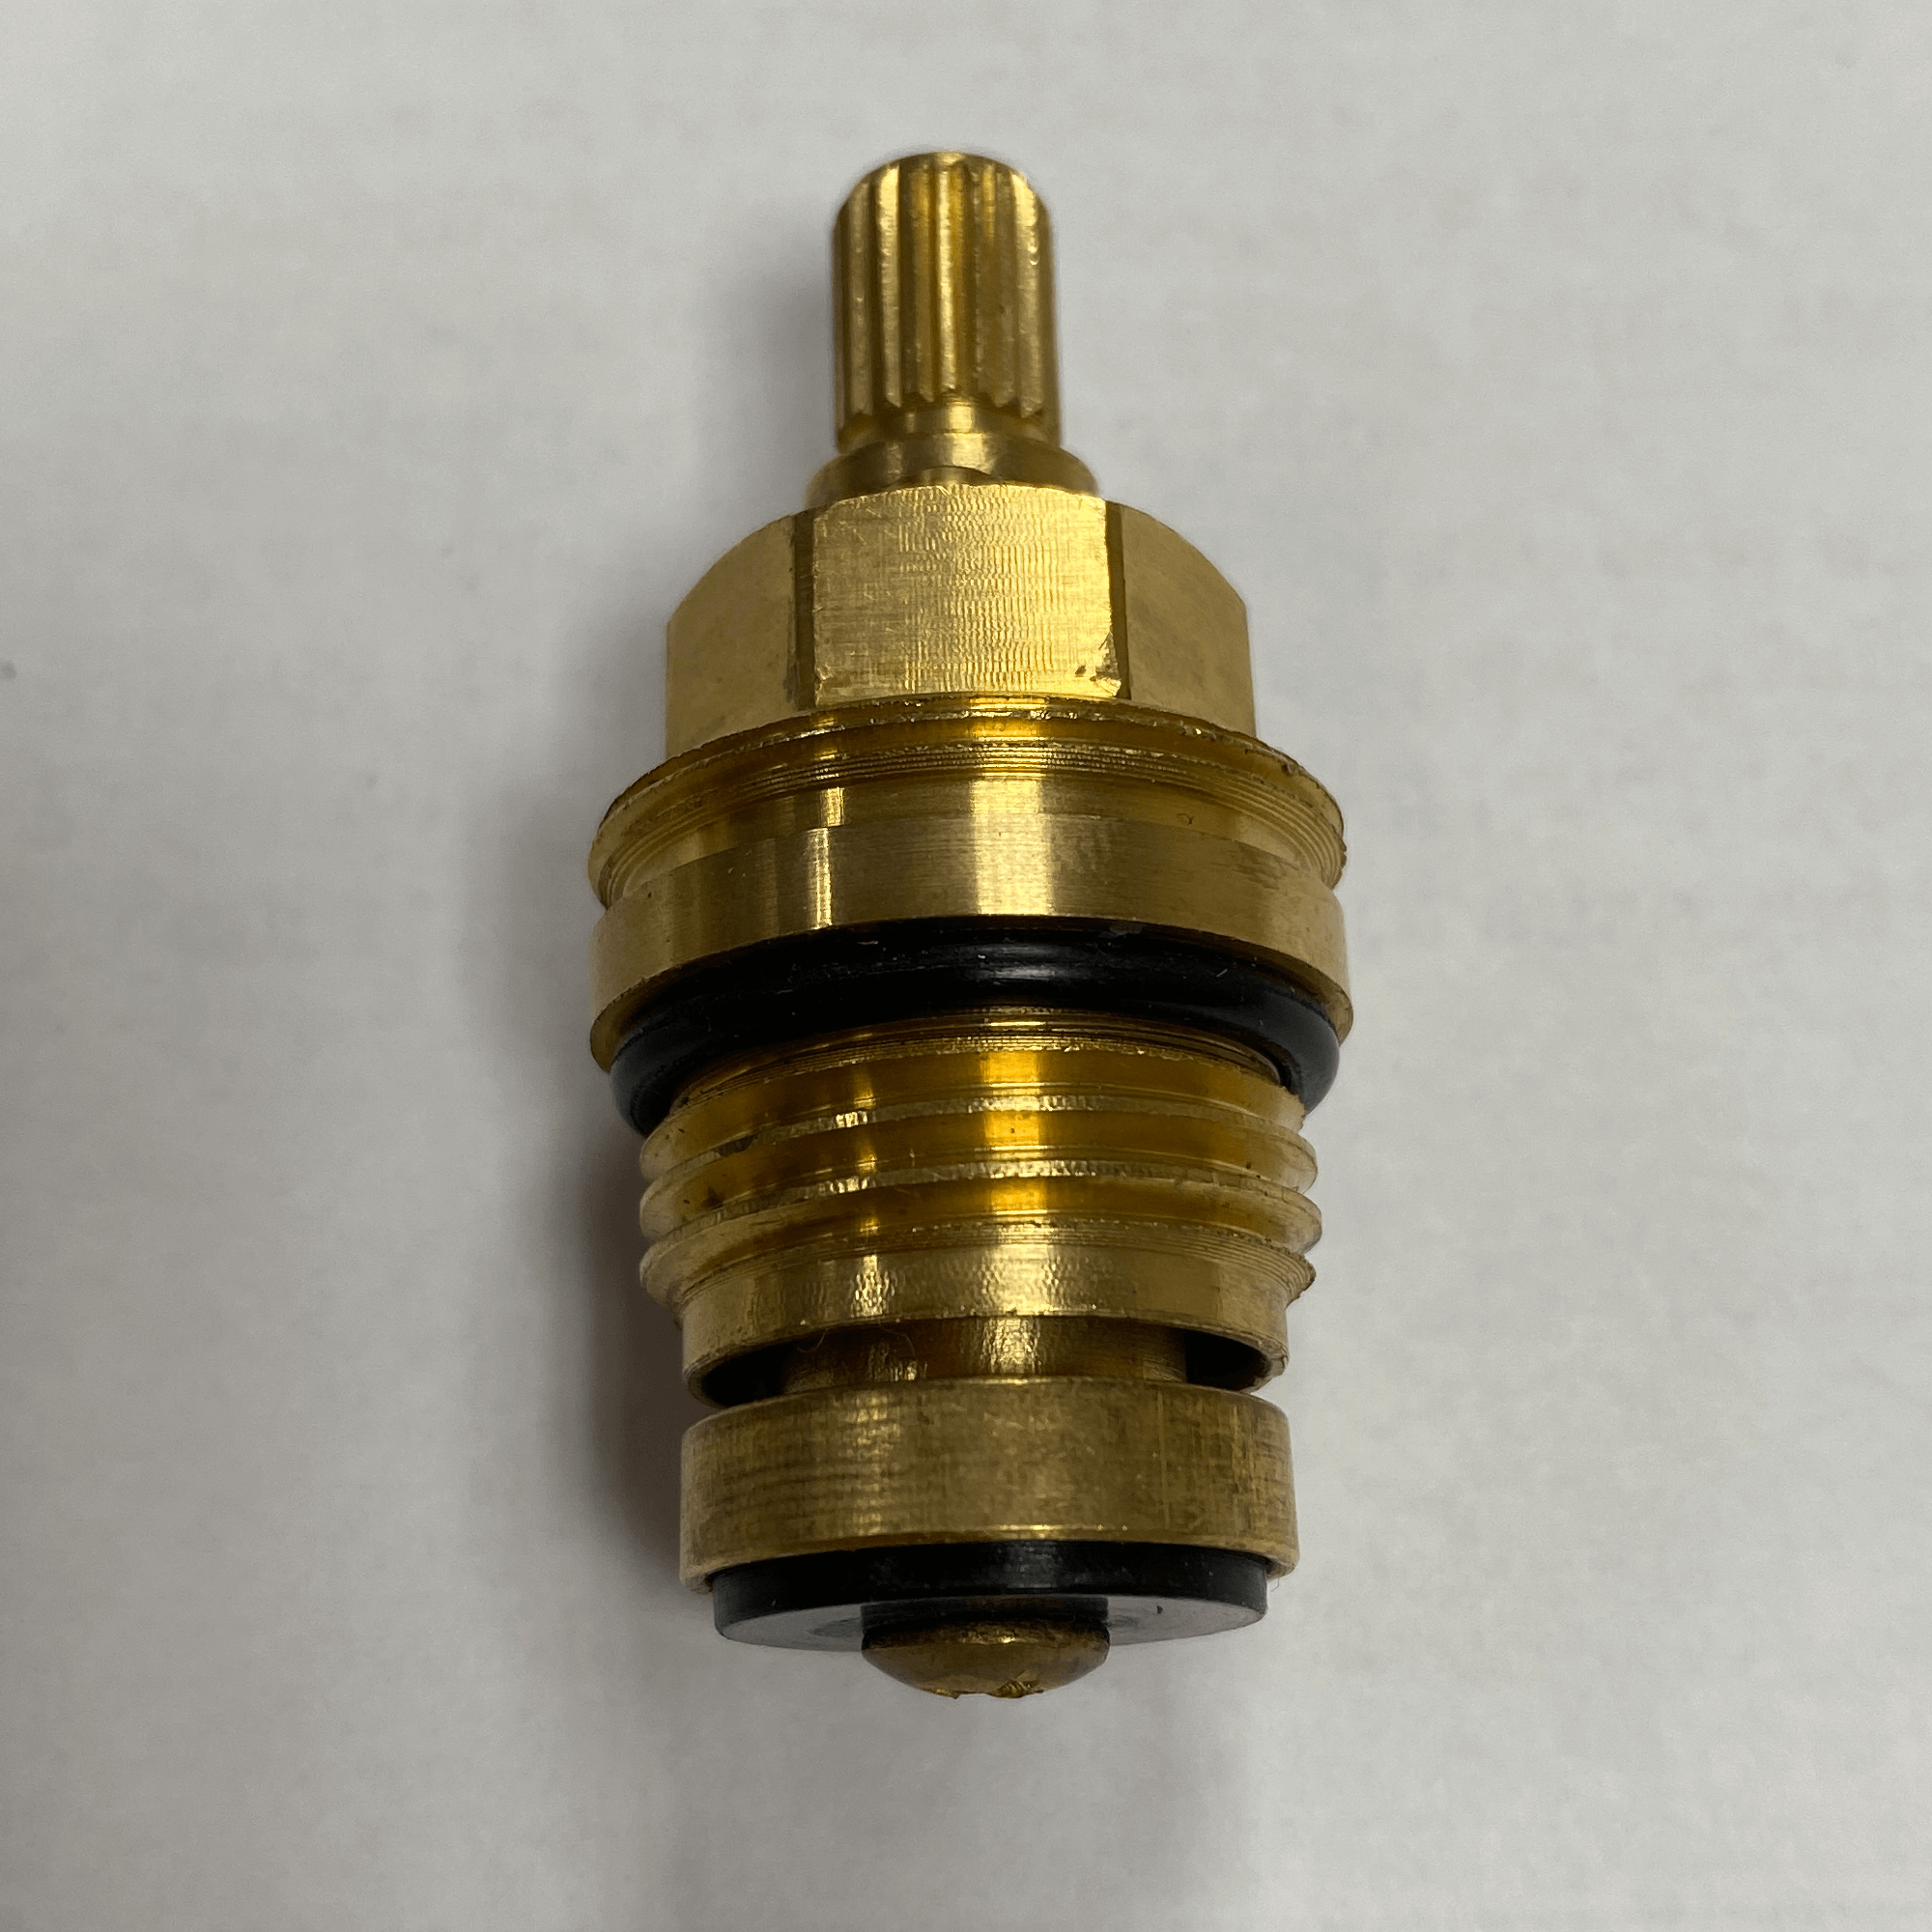 ON/OFF cartridge for shower valves - Vito